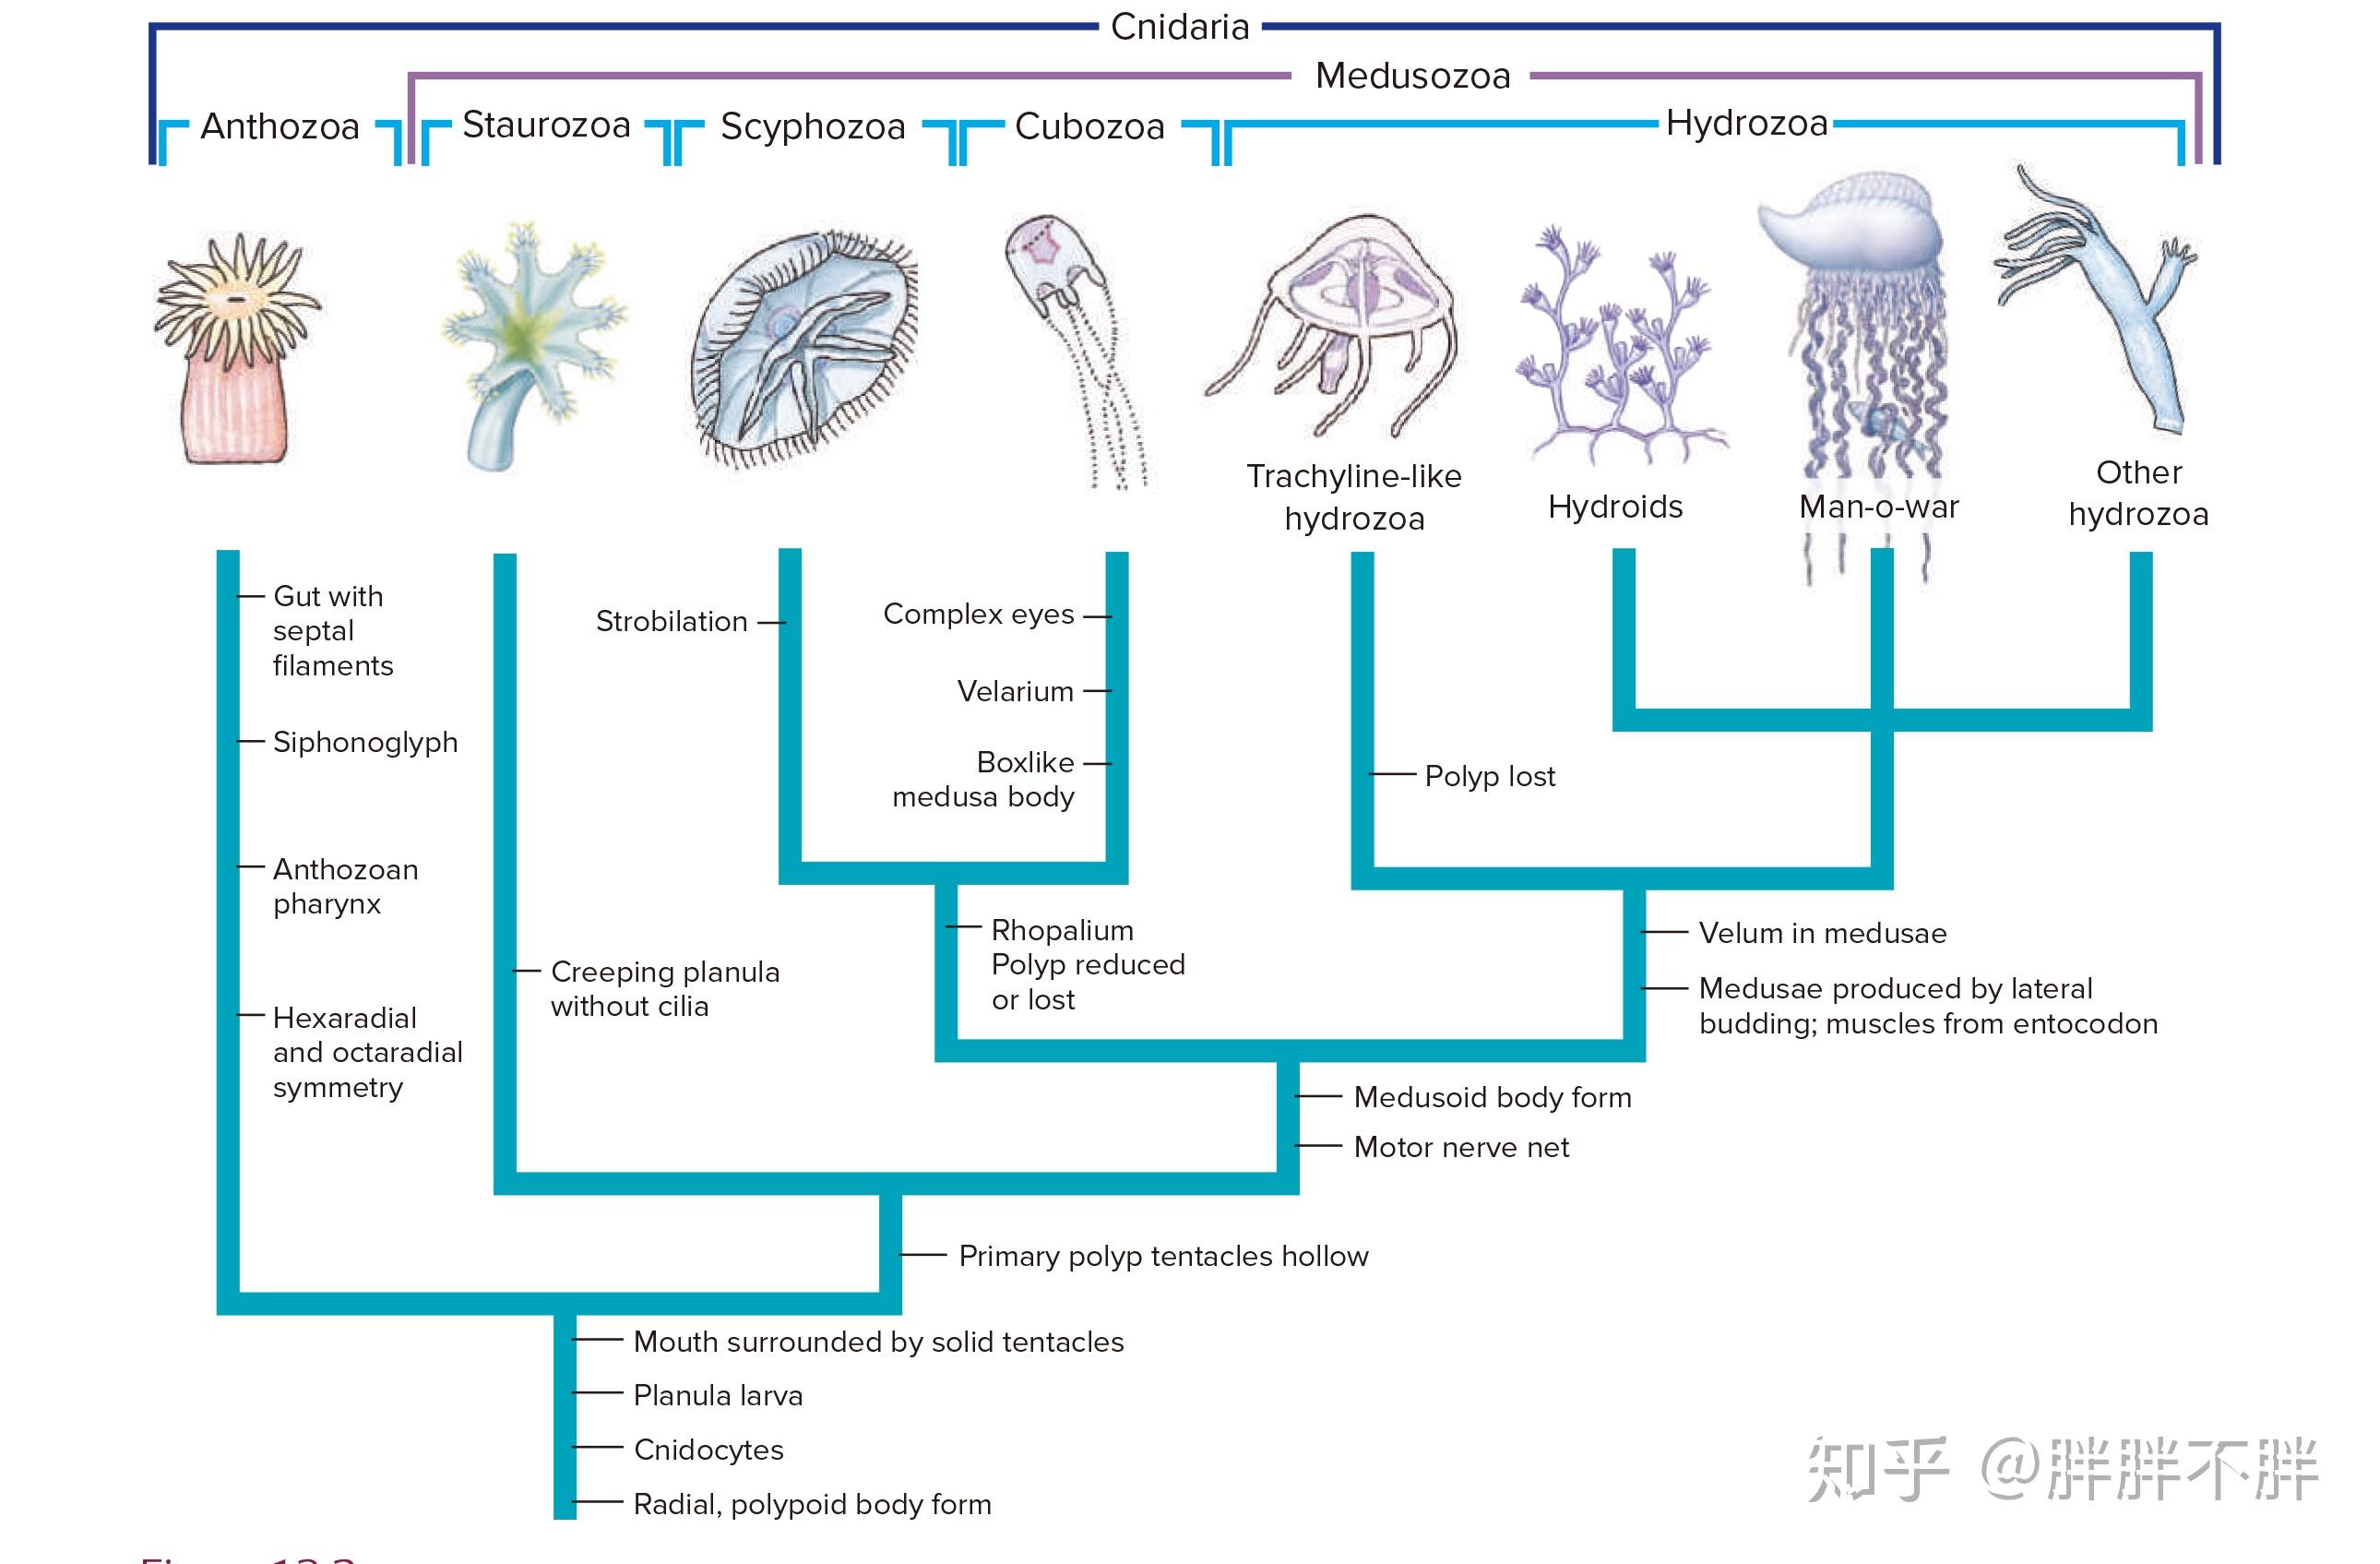 刺胞动物的体壁结构图片